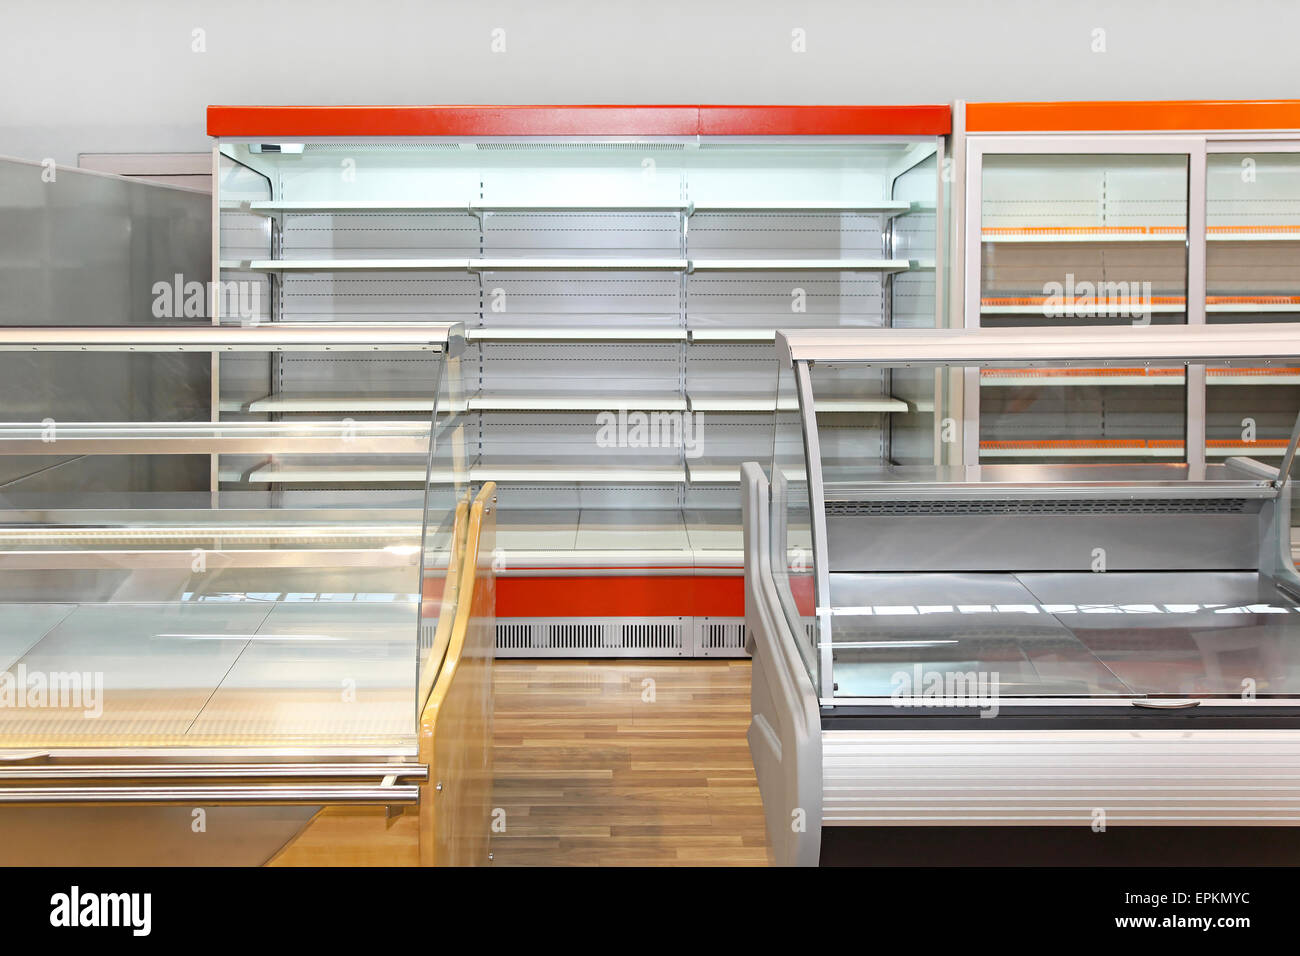 Empty shelves Stock Photo